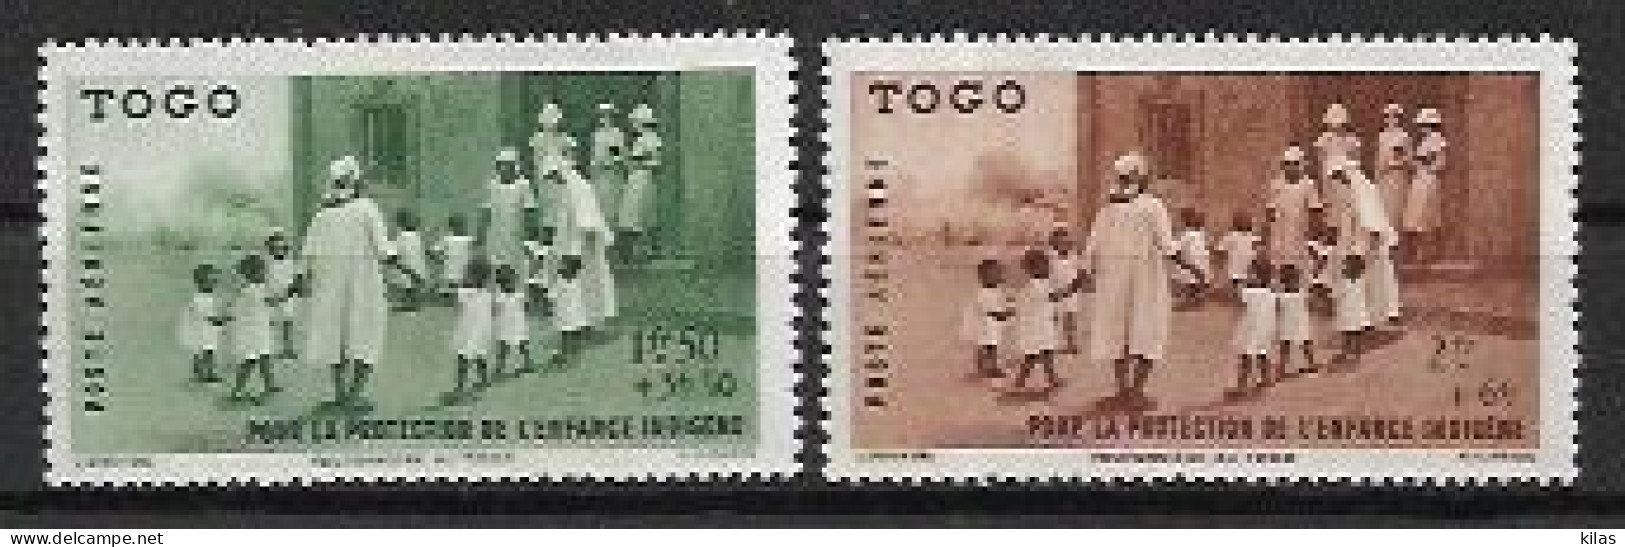 TOGO 1942 Protection De L'Enfance Indigène & Quinzaine Impériale (PEIQI) MNH - 1942 Protection De L'Enfance Indigène & Quinzaine Impériale (PEIQI)